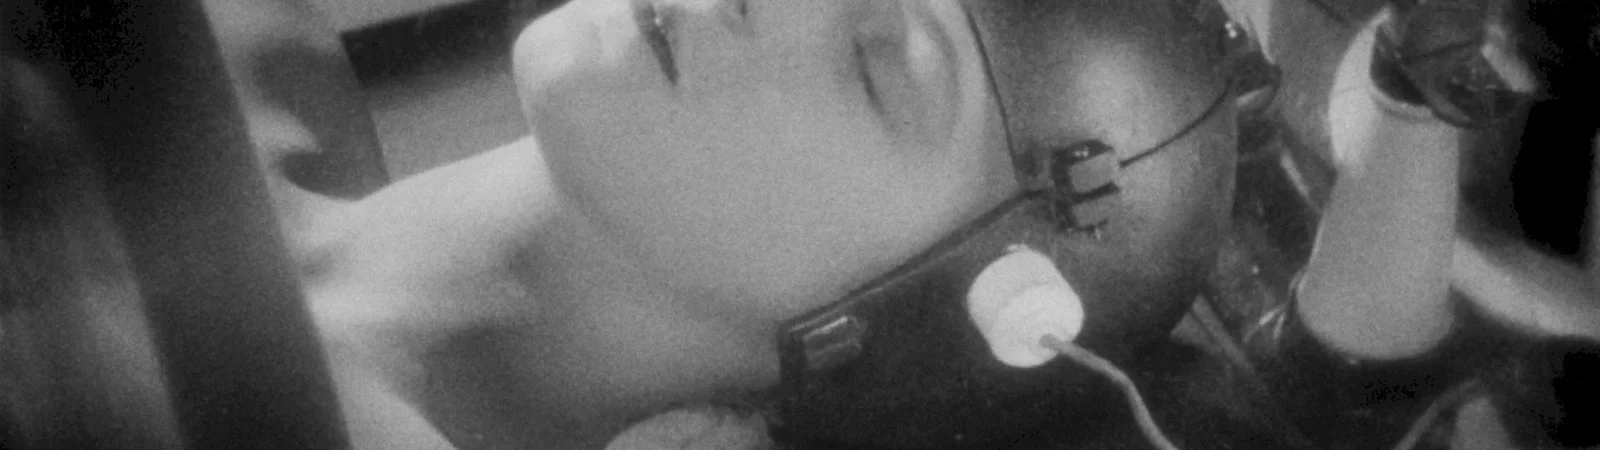 Photo dernier film Brigitte Helm